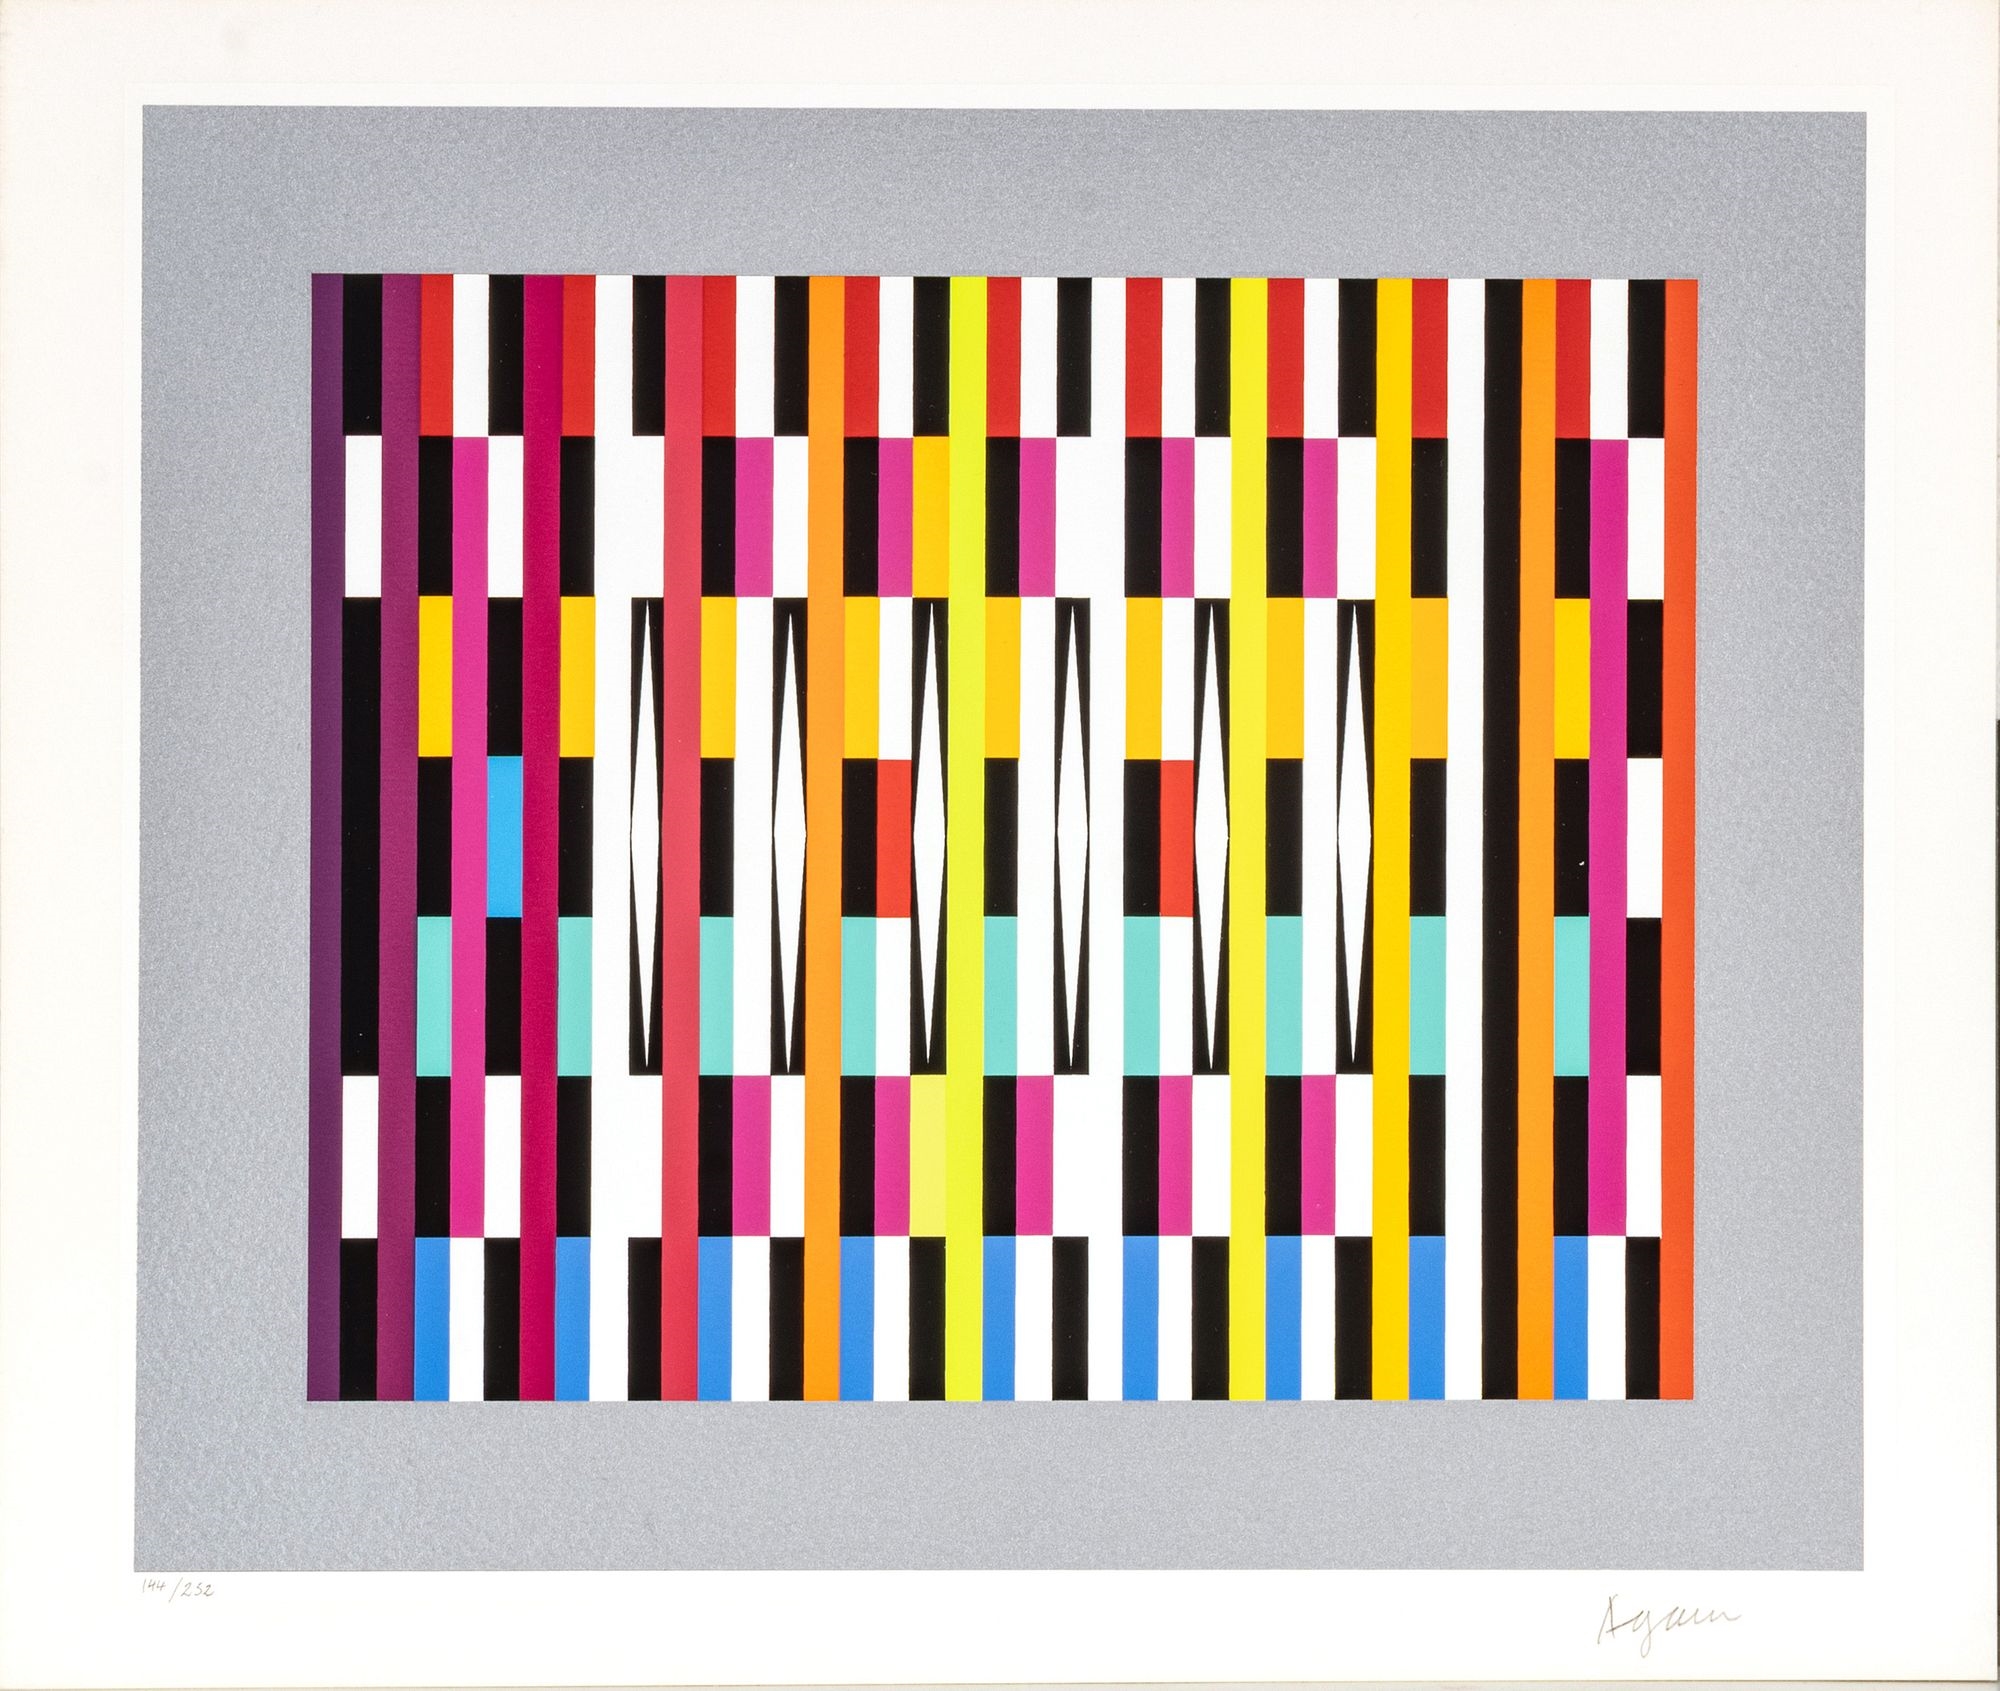 Artwork by Yaacov Agam, Yaacov Agam (Israeli, 1928) Silkscreens In Color On Wove Paper, High Rhythm; Pointed Rhythm; Vertical Rhythm 5, H 9.25'' W 10.75'' 3 pcs, Made of Silkscreens In Color On Wove Paper